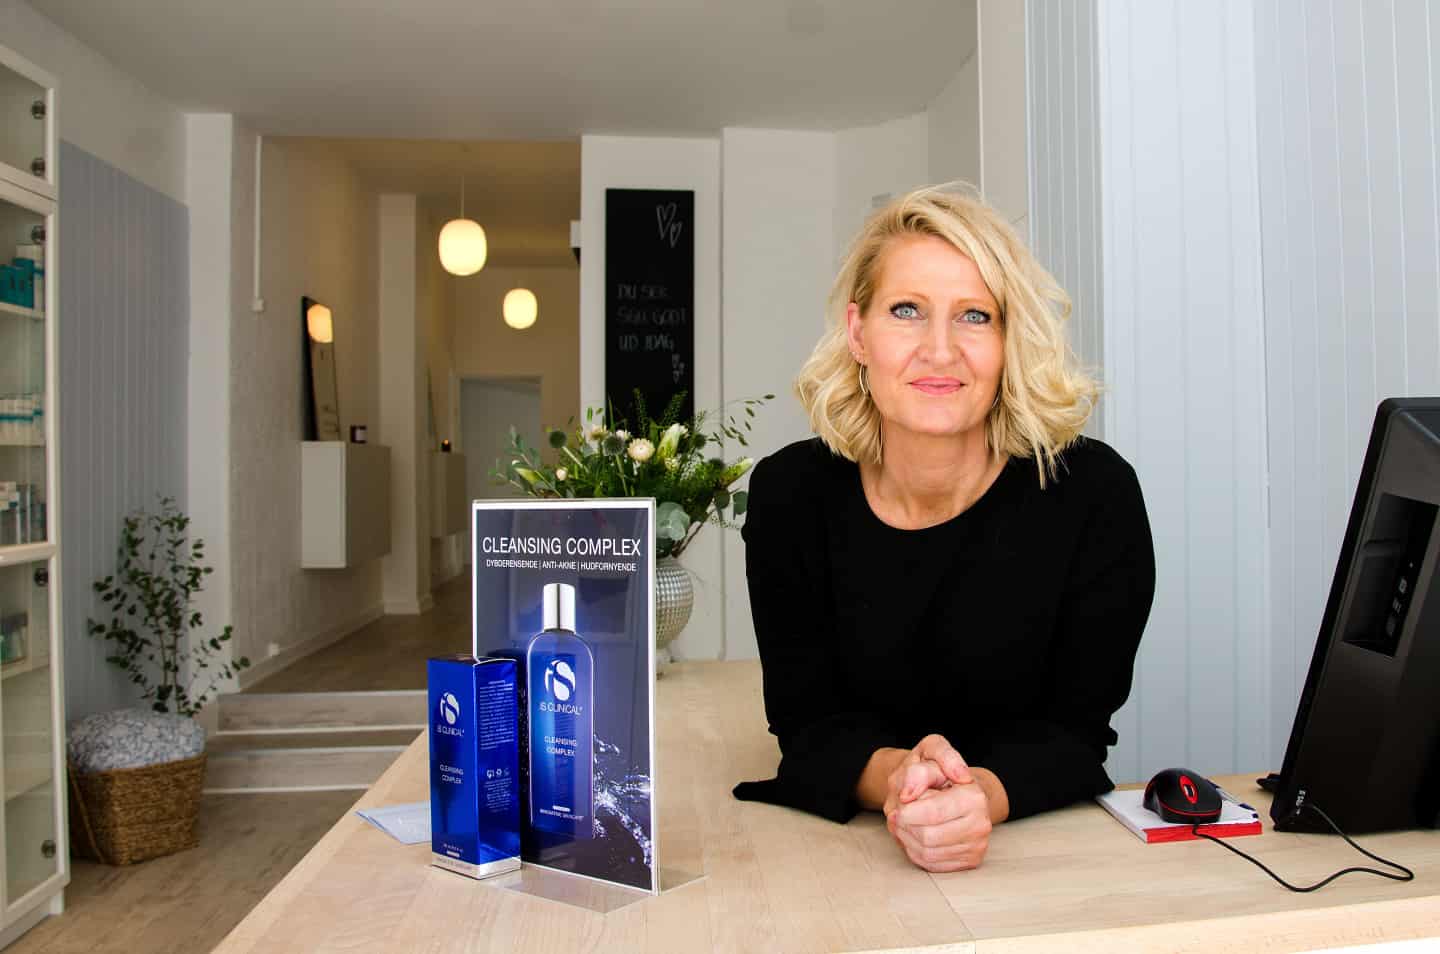 Hud er Leises store passion: Nu hun igen fået sin helt egen skønhedsklinik | ugeavisen.dk